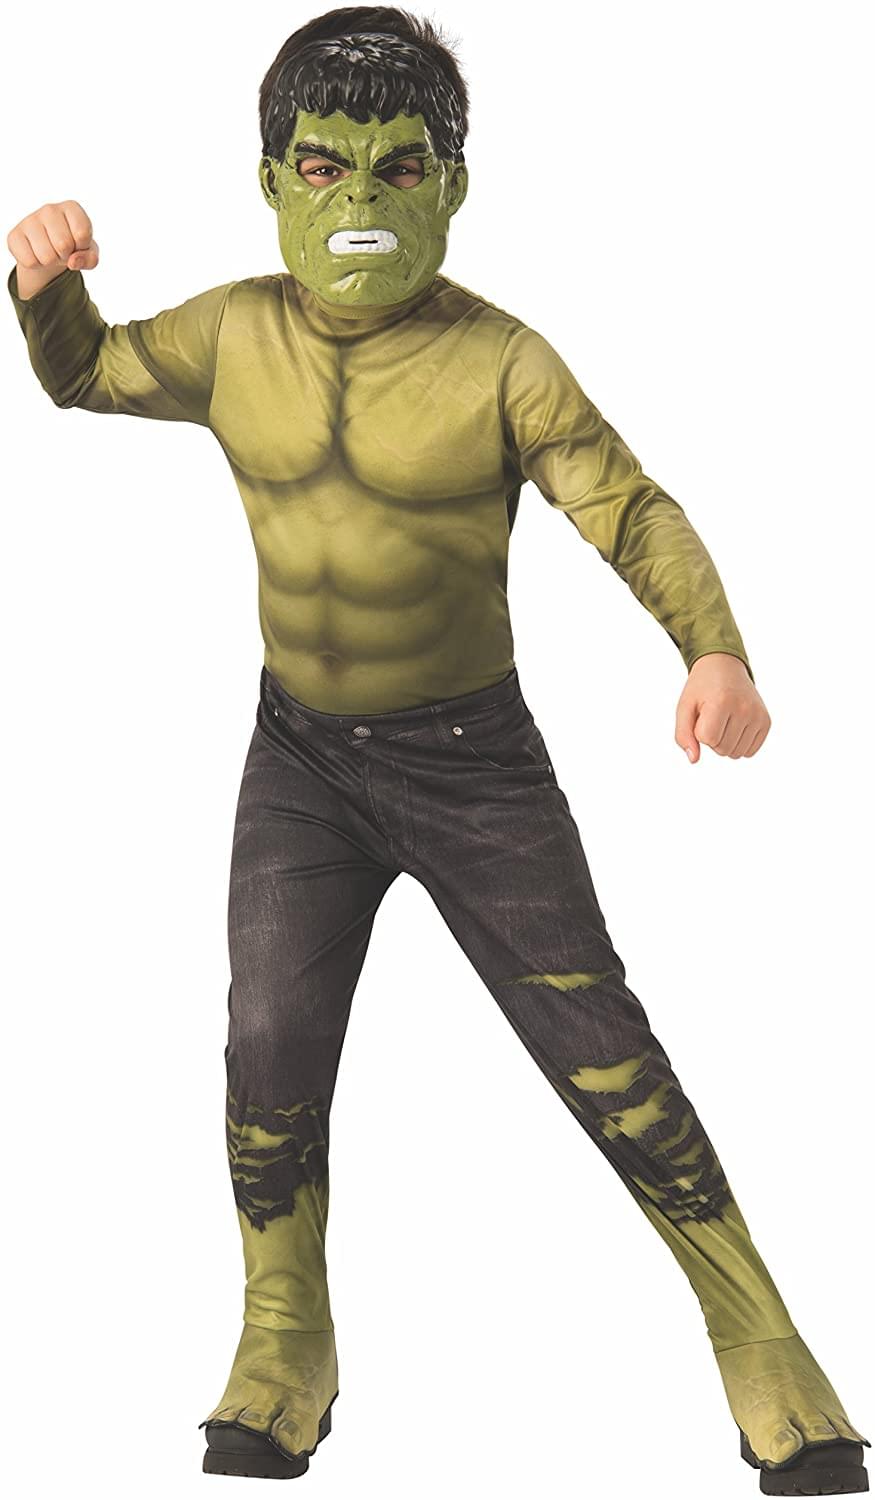 Marvel Avengers Infinity War Hulk Child Costume